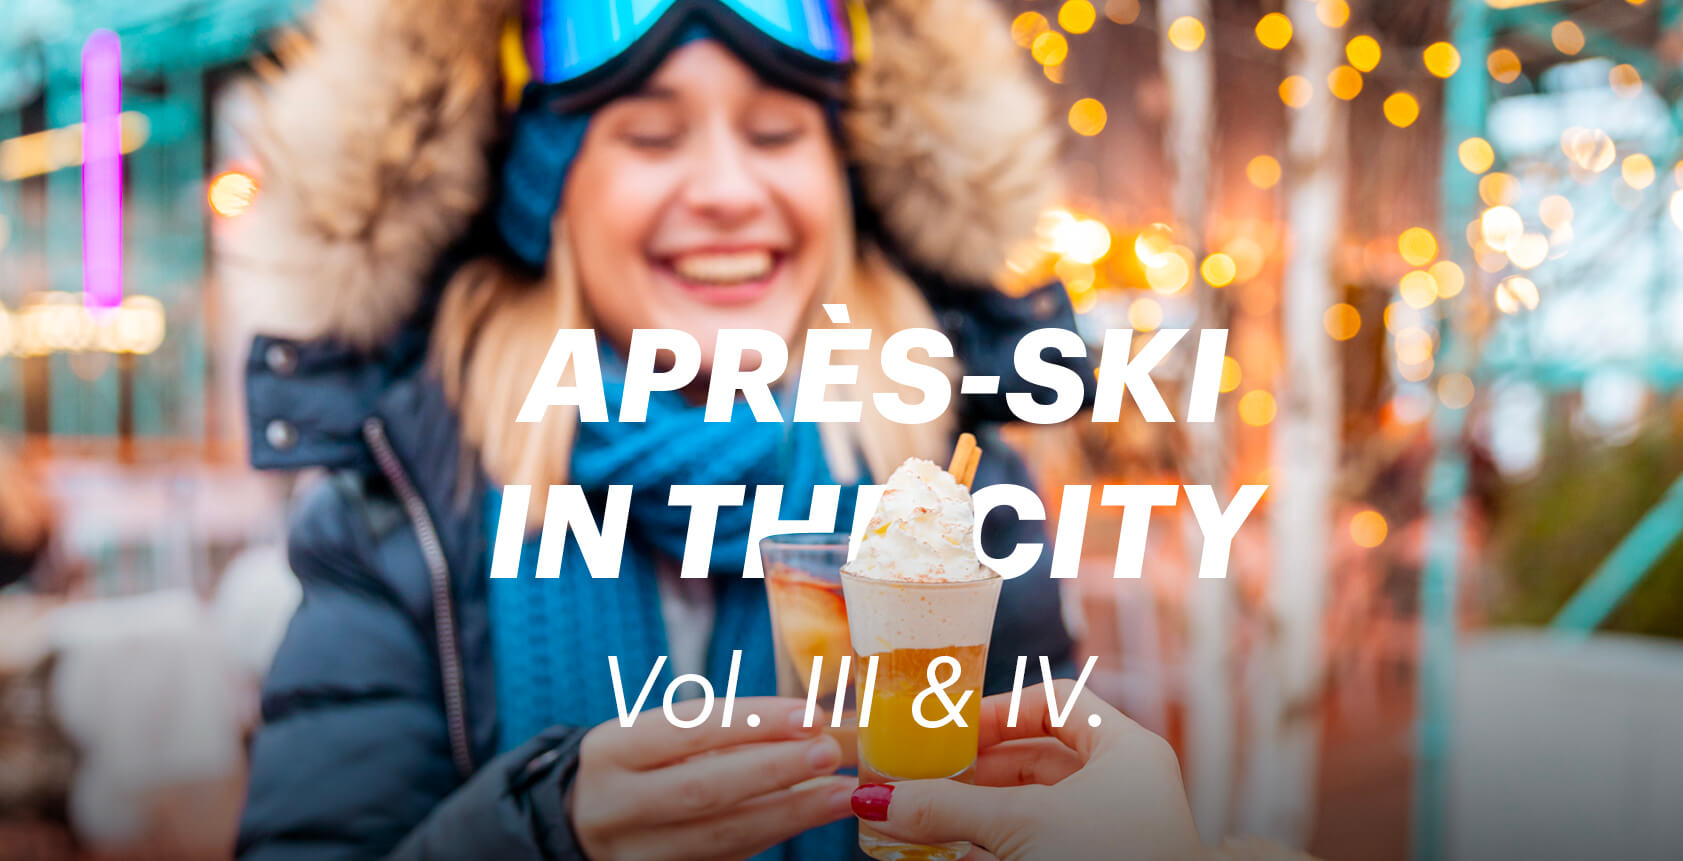 Apres-Ski in the City Vol.III & IV., 18/02